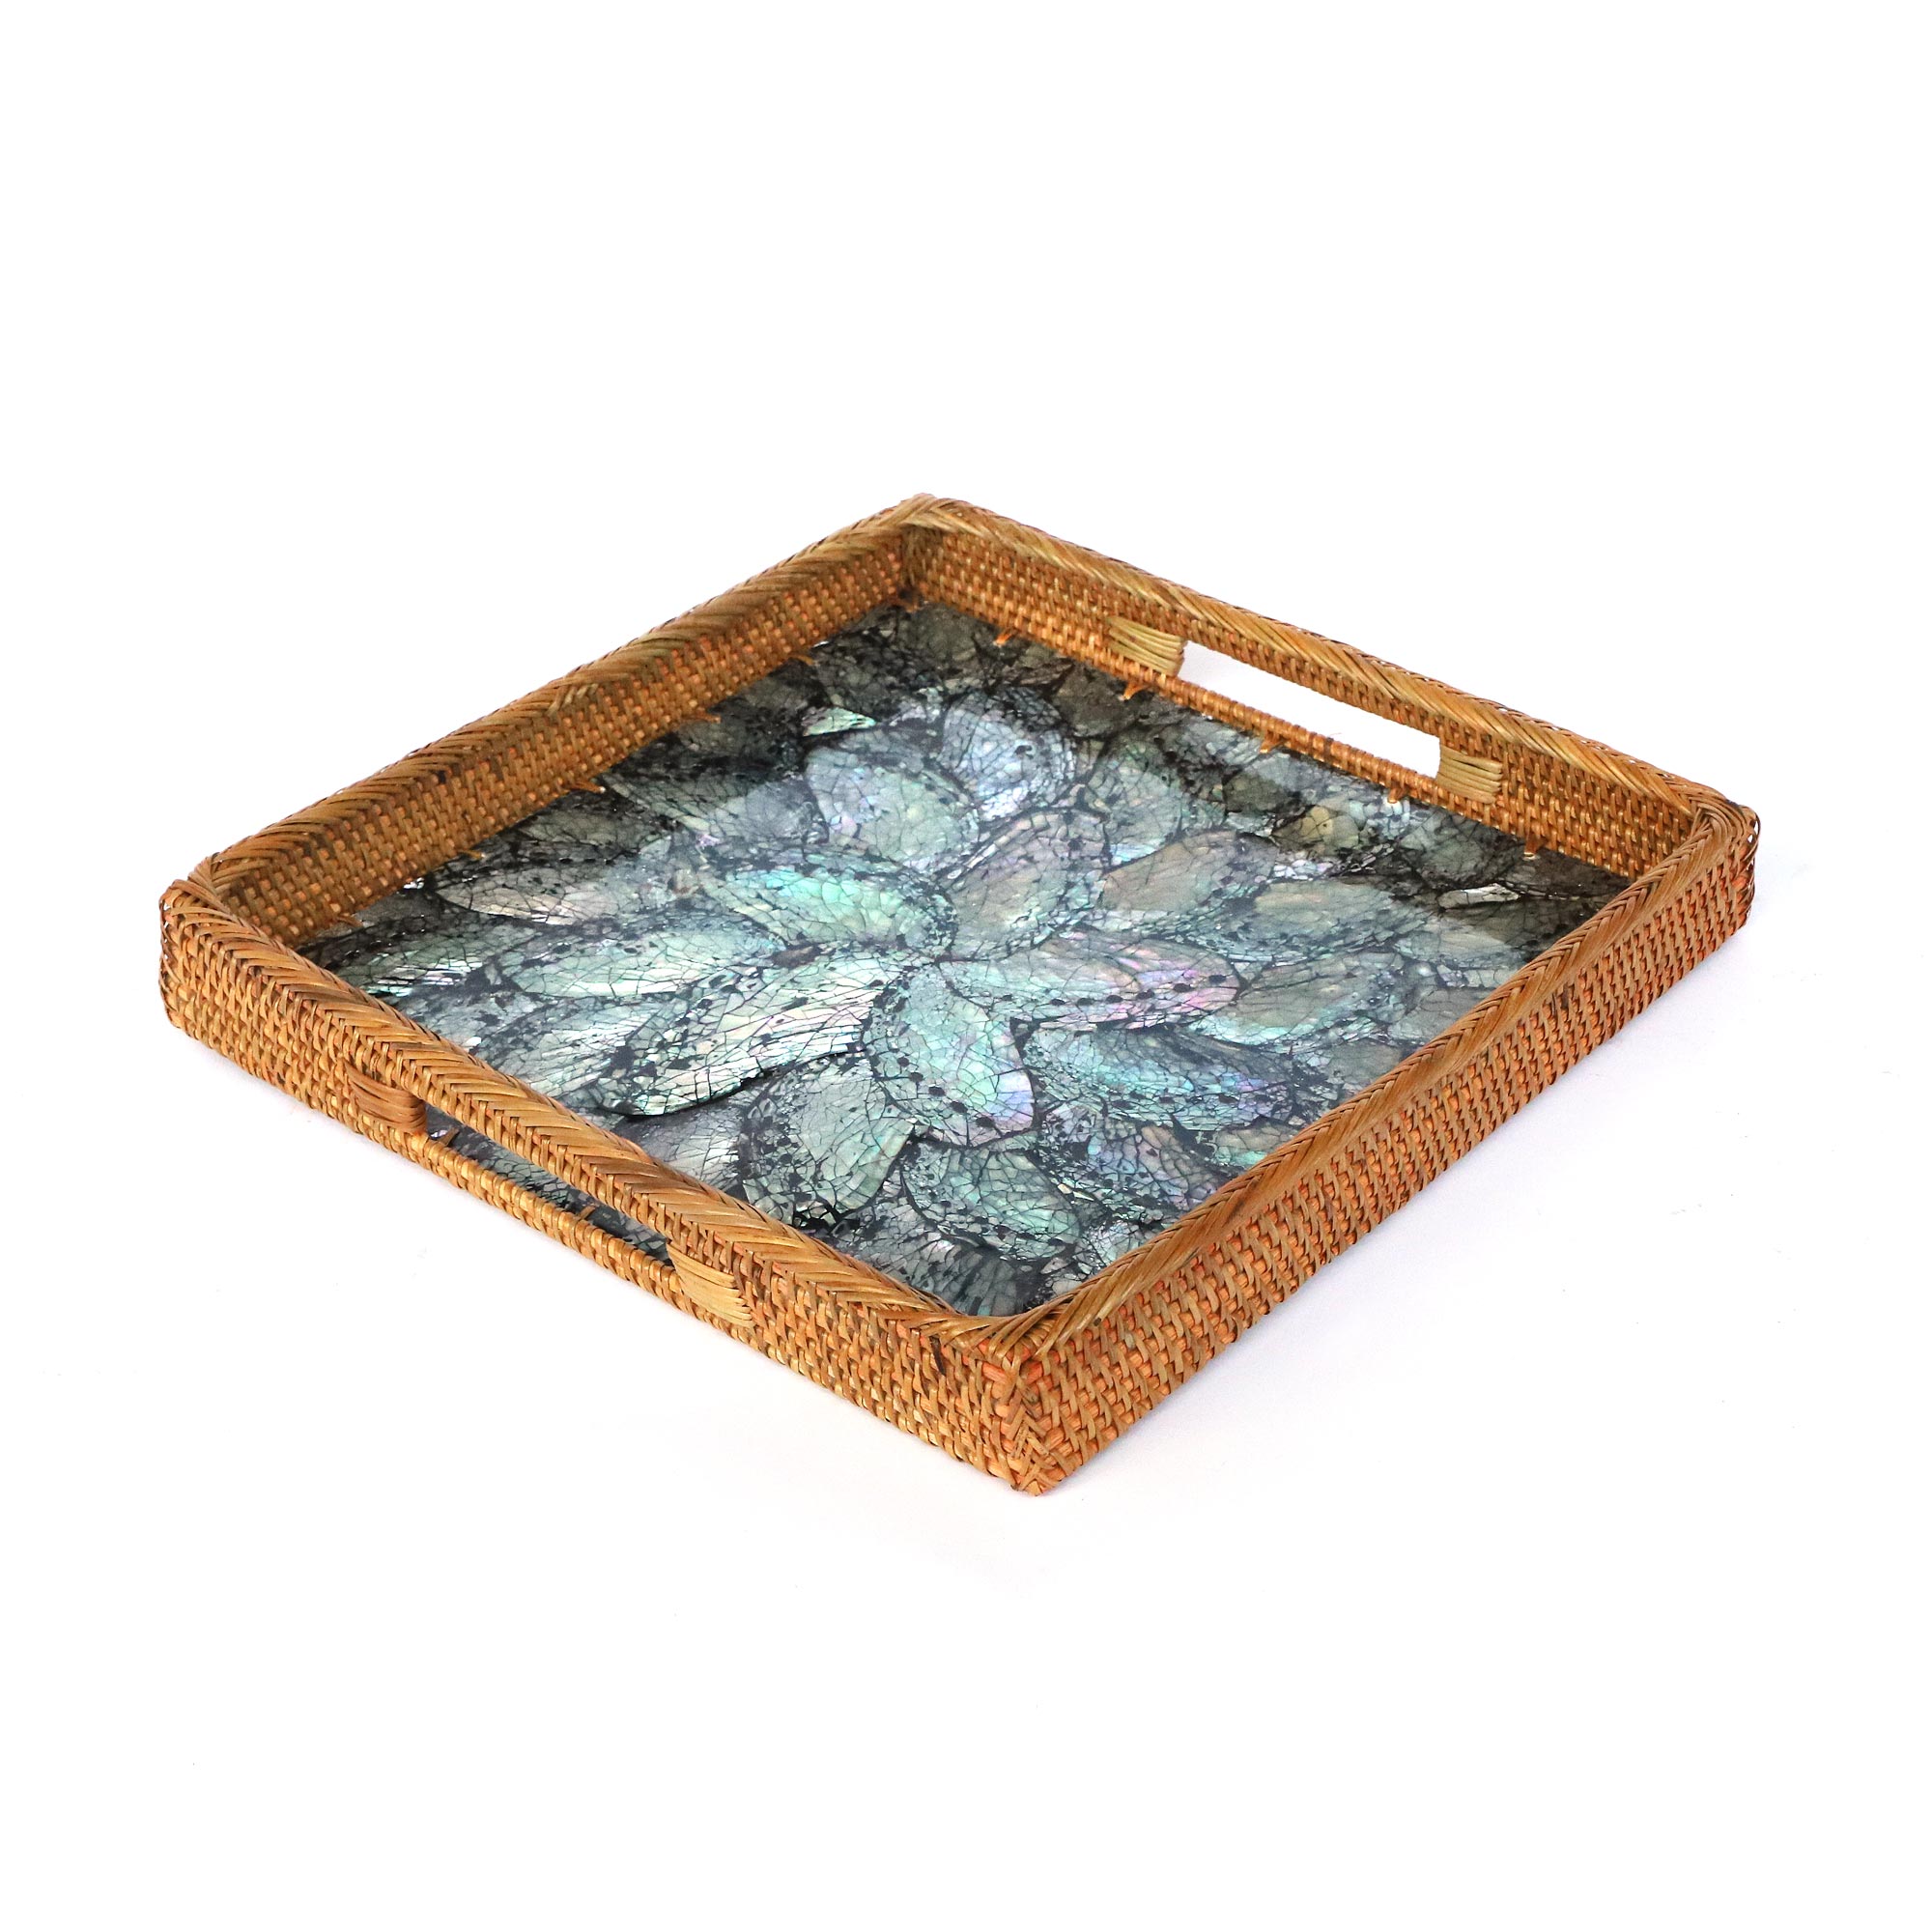 Rattan-Tablett mit Perlmutt-Boden, B 30 L 30 zu cm, cm, € cm 39,00 H4